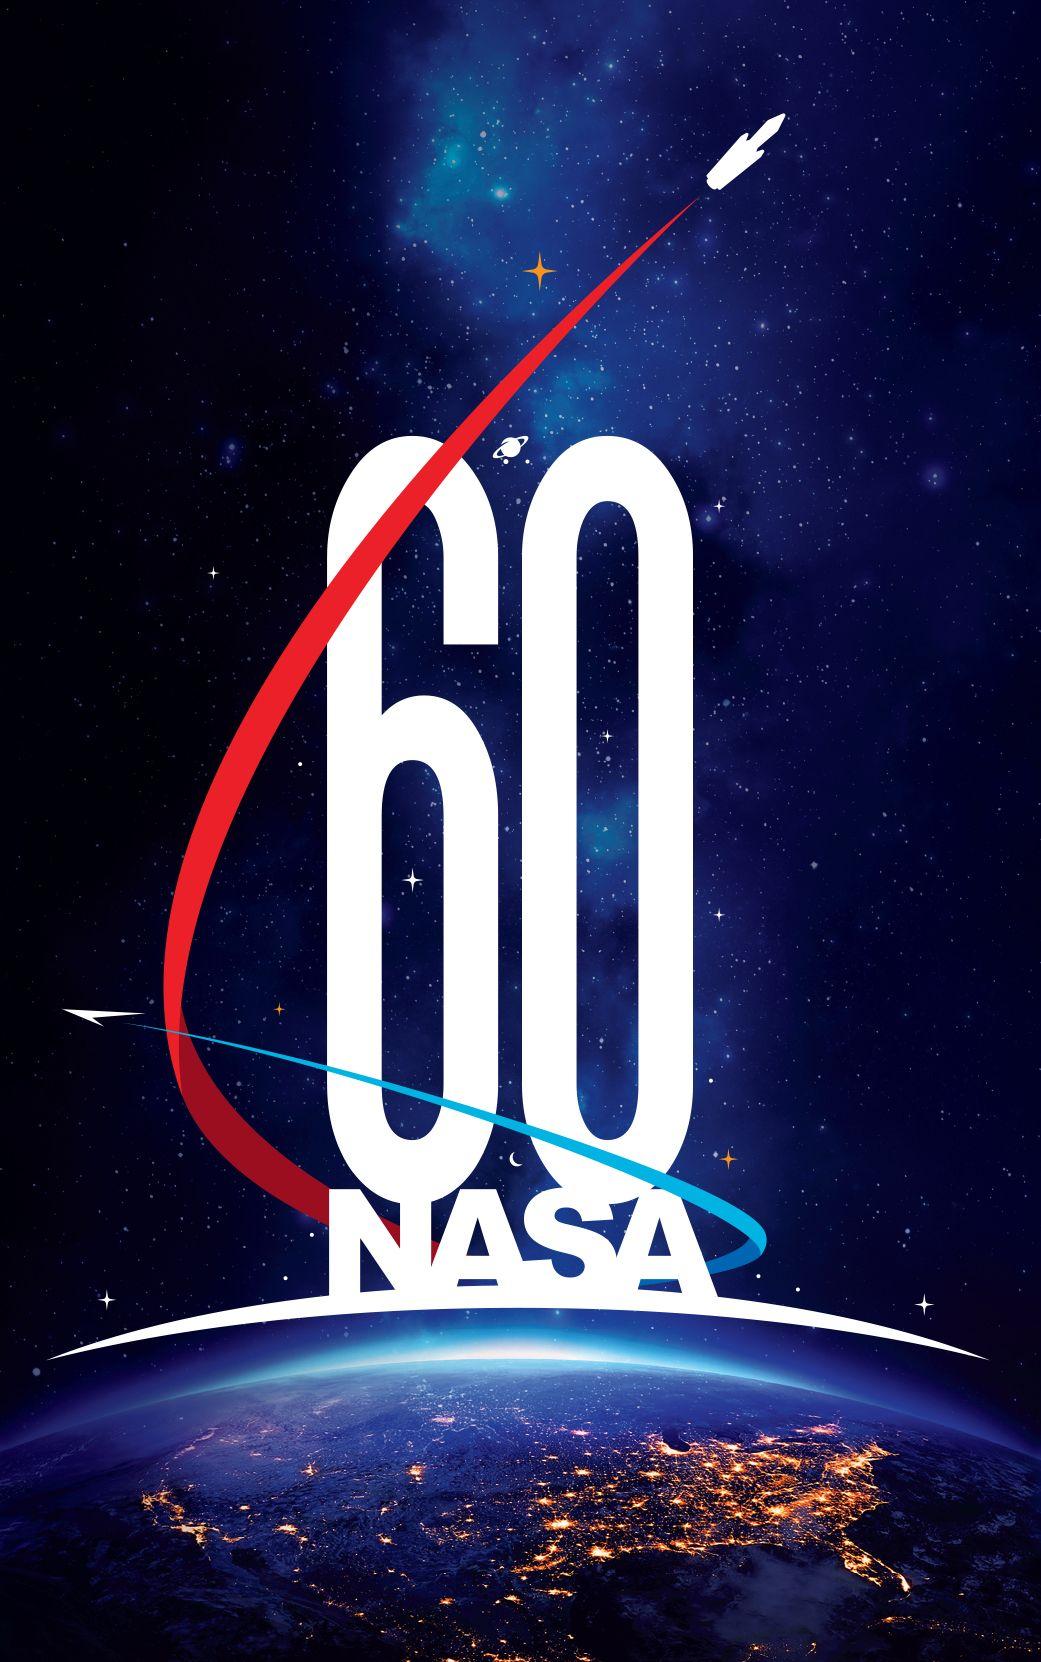 Official NASA Logo - New NASA Logo For Upcoming 60th Anniversary Designed